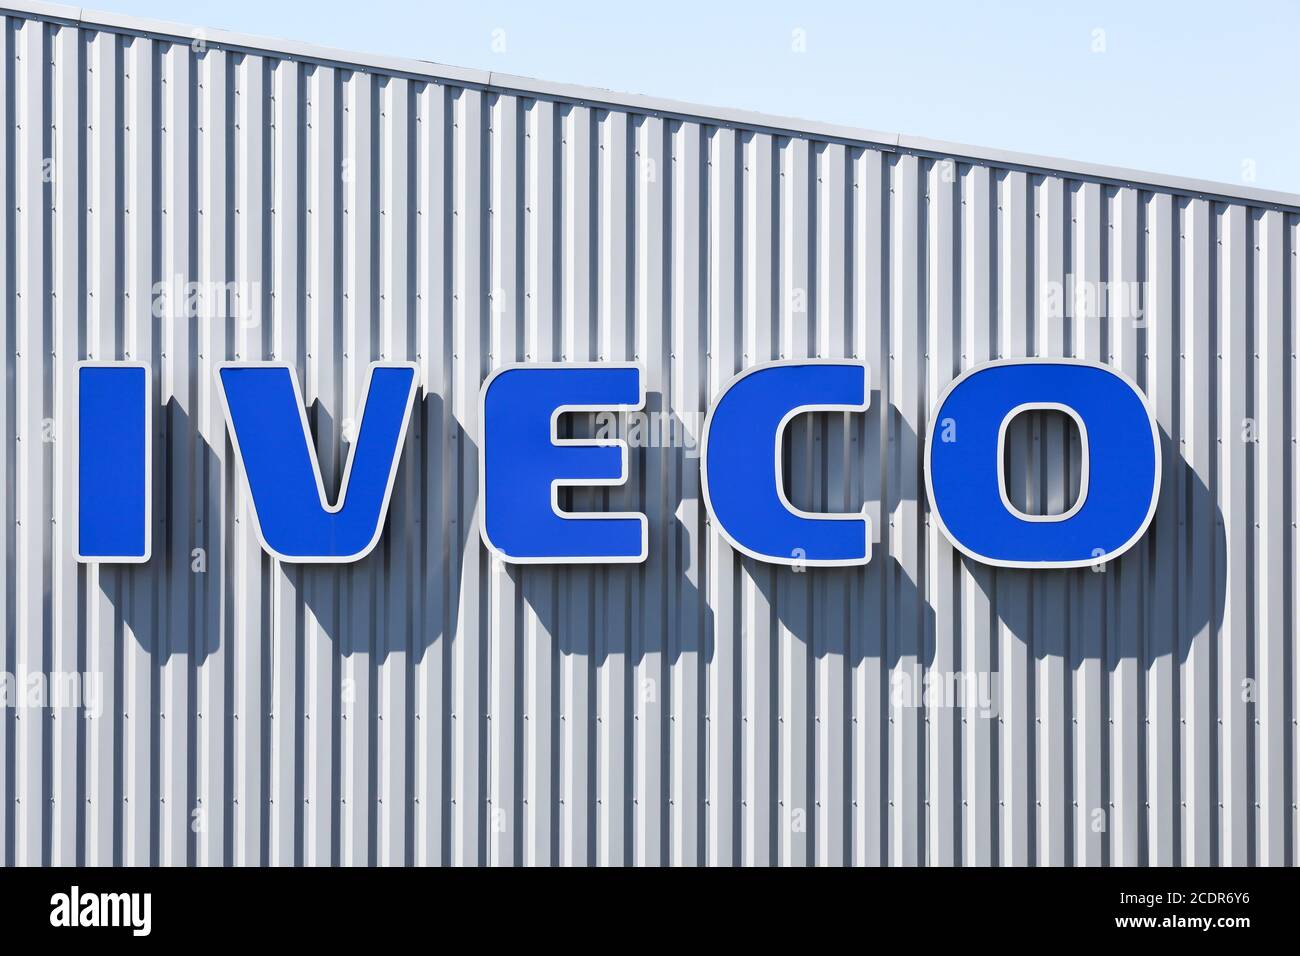 Villefranche, Francia - 17 maggio 2020: Logo Iveco su un edificio. Iveco è un'azienda italiana di produzione di veicoli industriali con sede a Torino Foto Stock